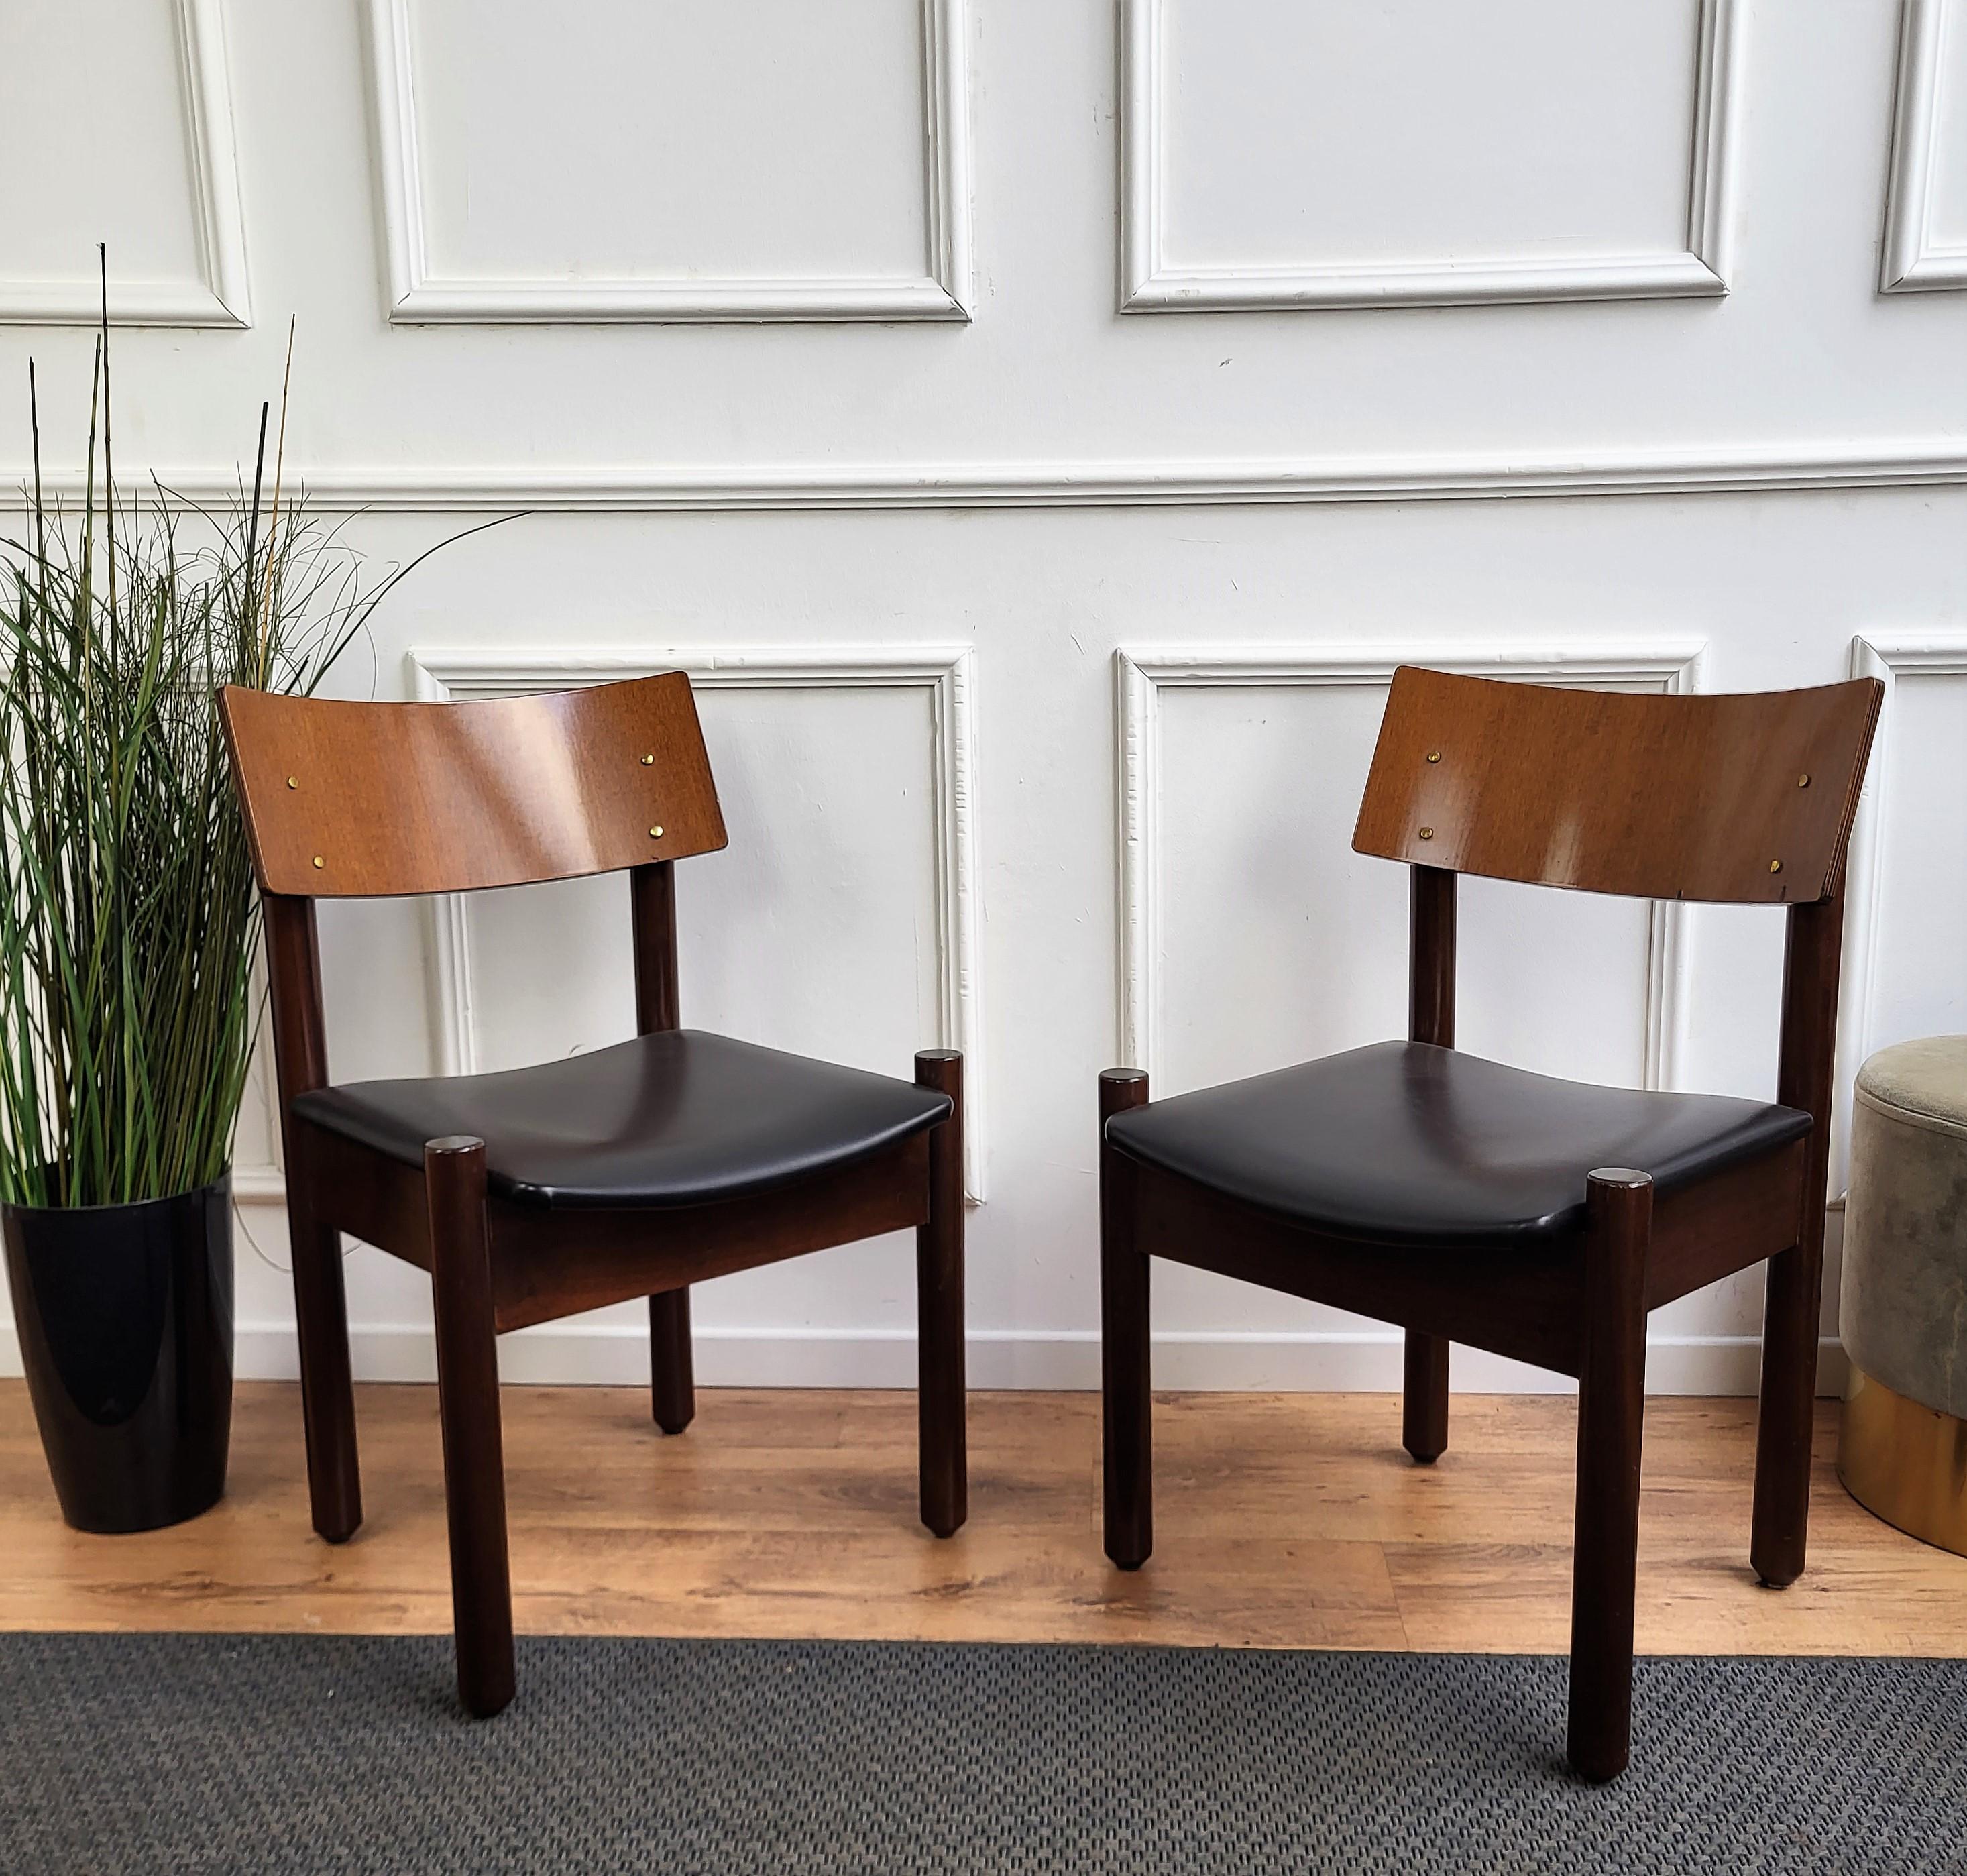 Magnifique et élégant ensemble de 6 chaises de salle à manger italiennes de style moderne du milieu du siècle, avec une structure en bois très travaillée et façonnée et une assise recouverte de tissu noir. Le design unique et typique, avec ses